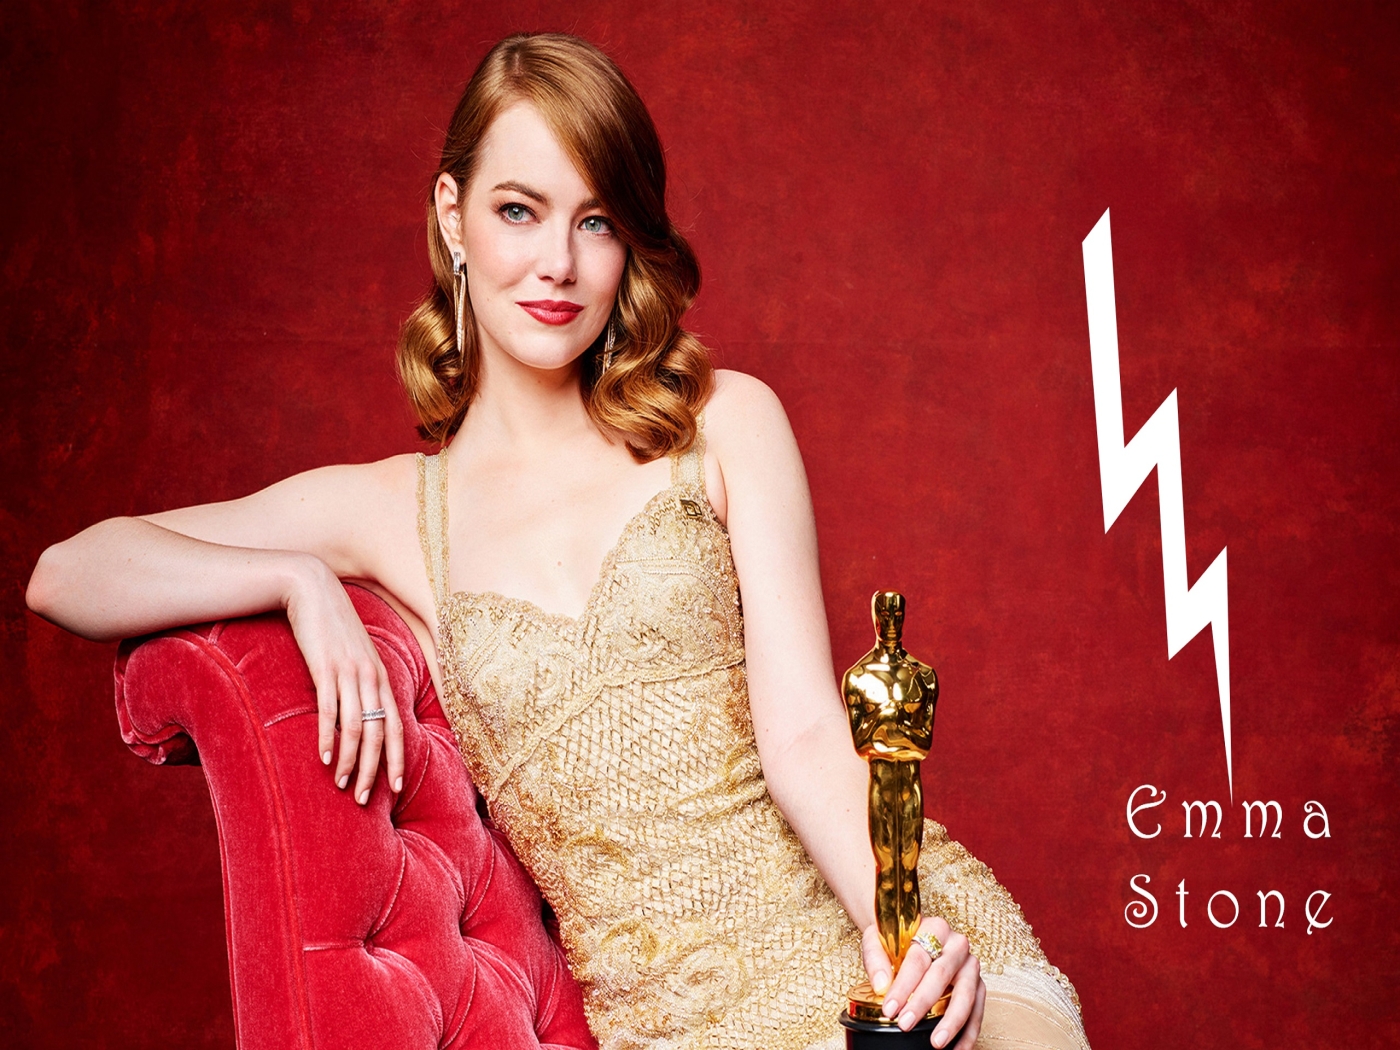 Emma Stone Oscar Winner for 1400 x 1050 resolution